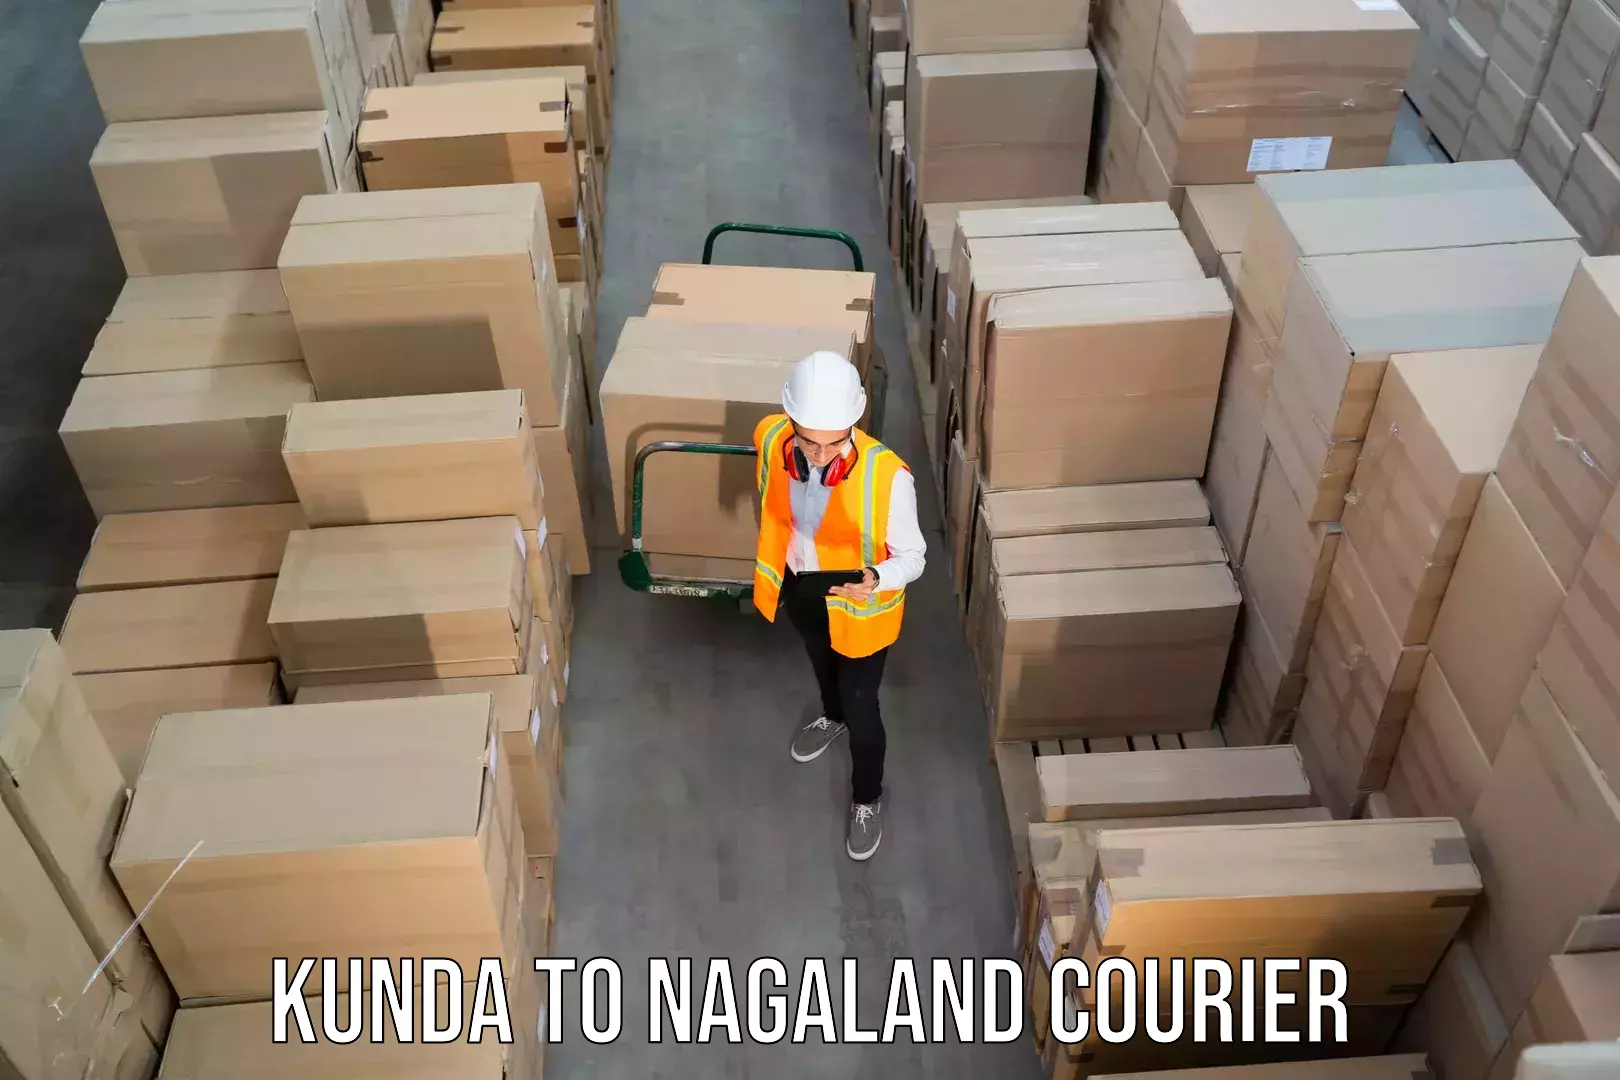 Express package handling Kunda to Nagaland